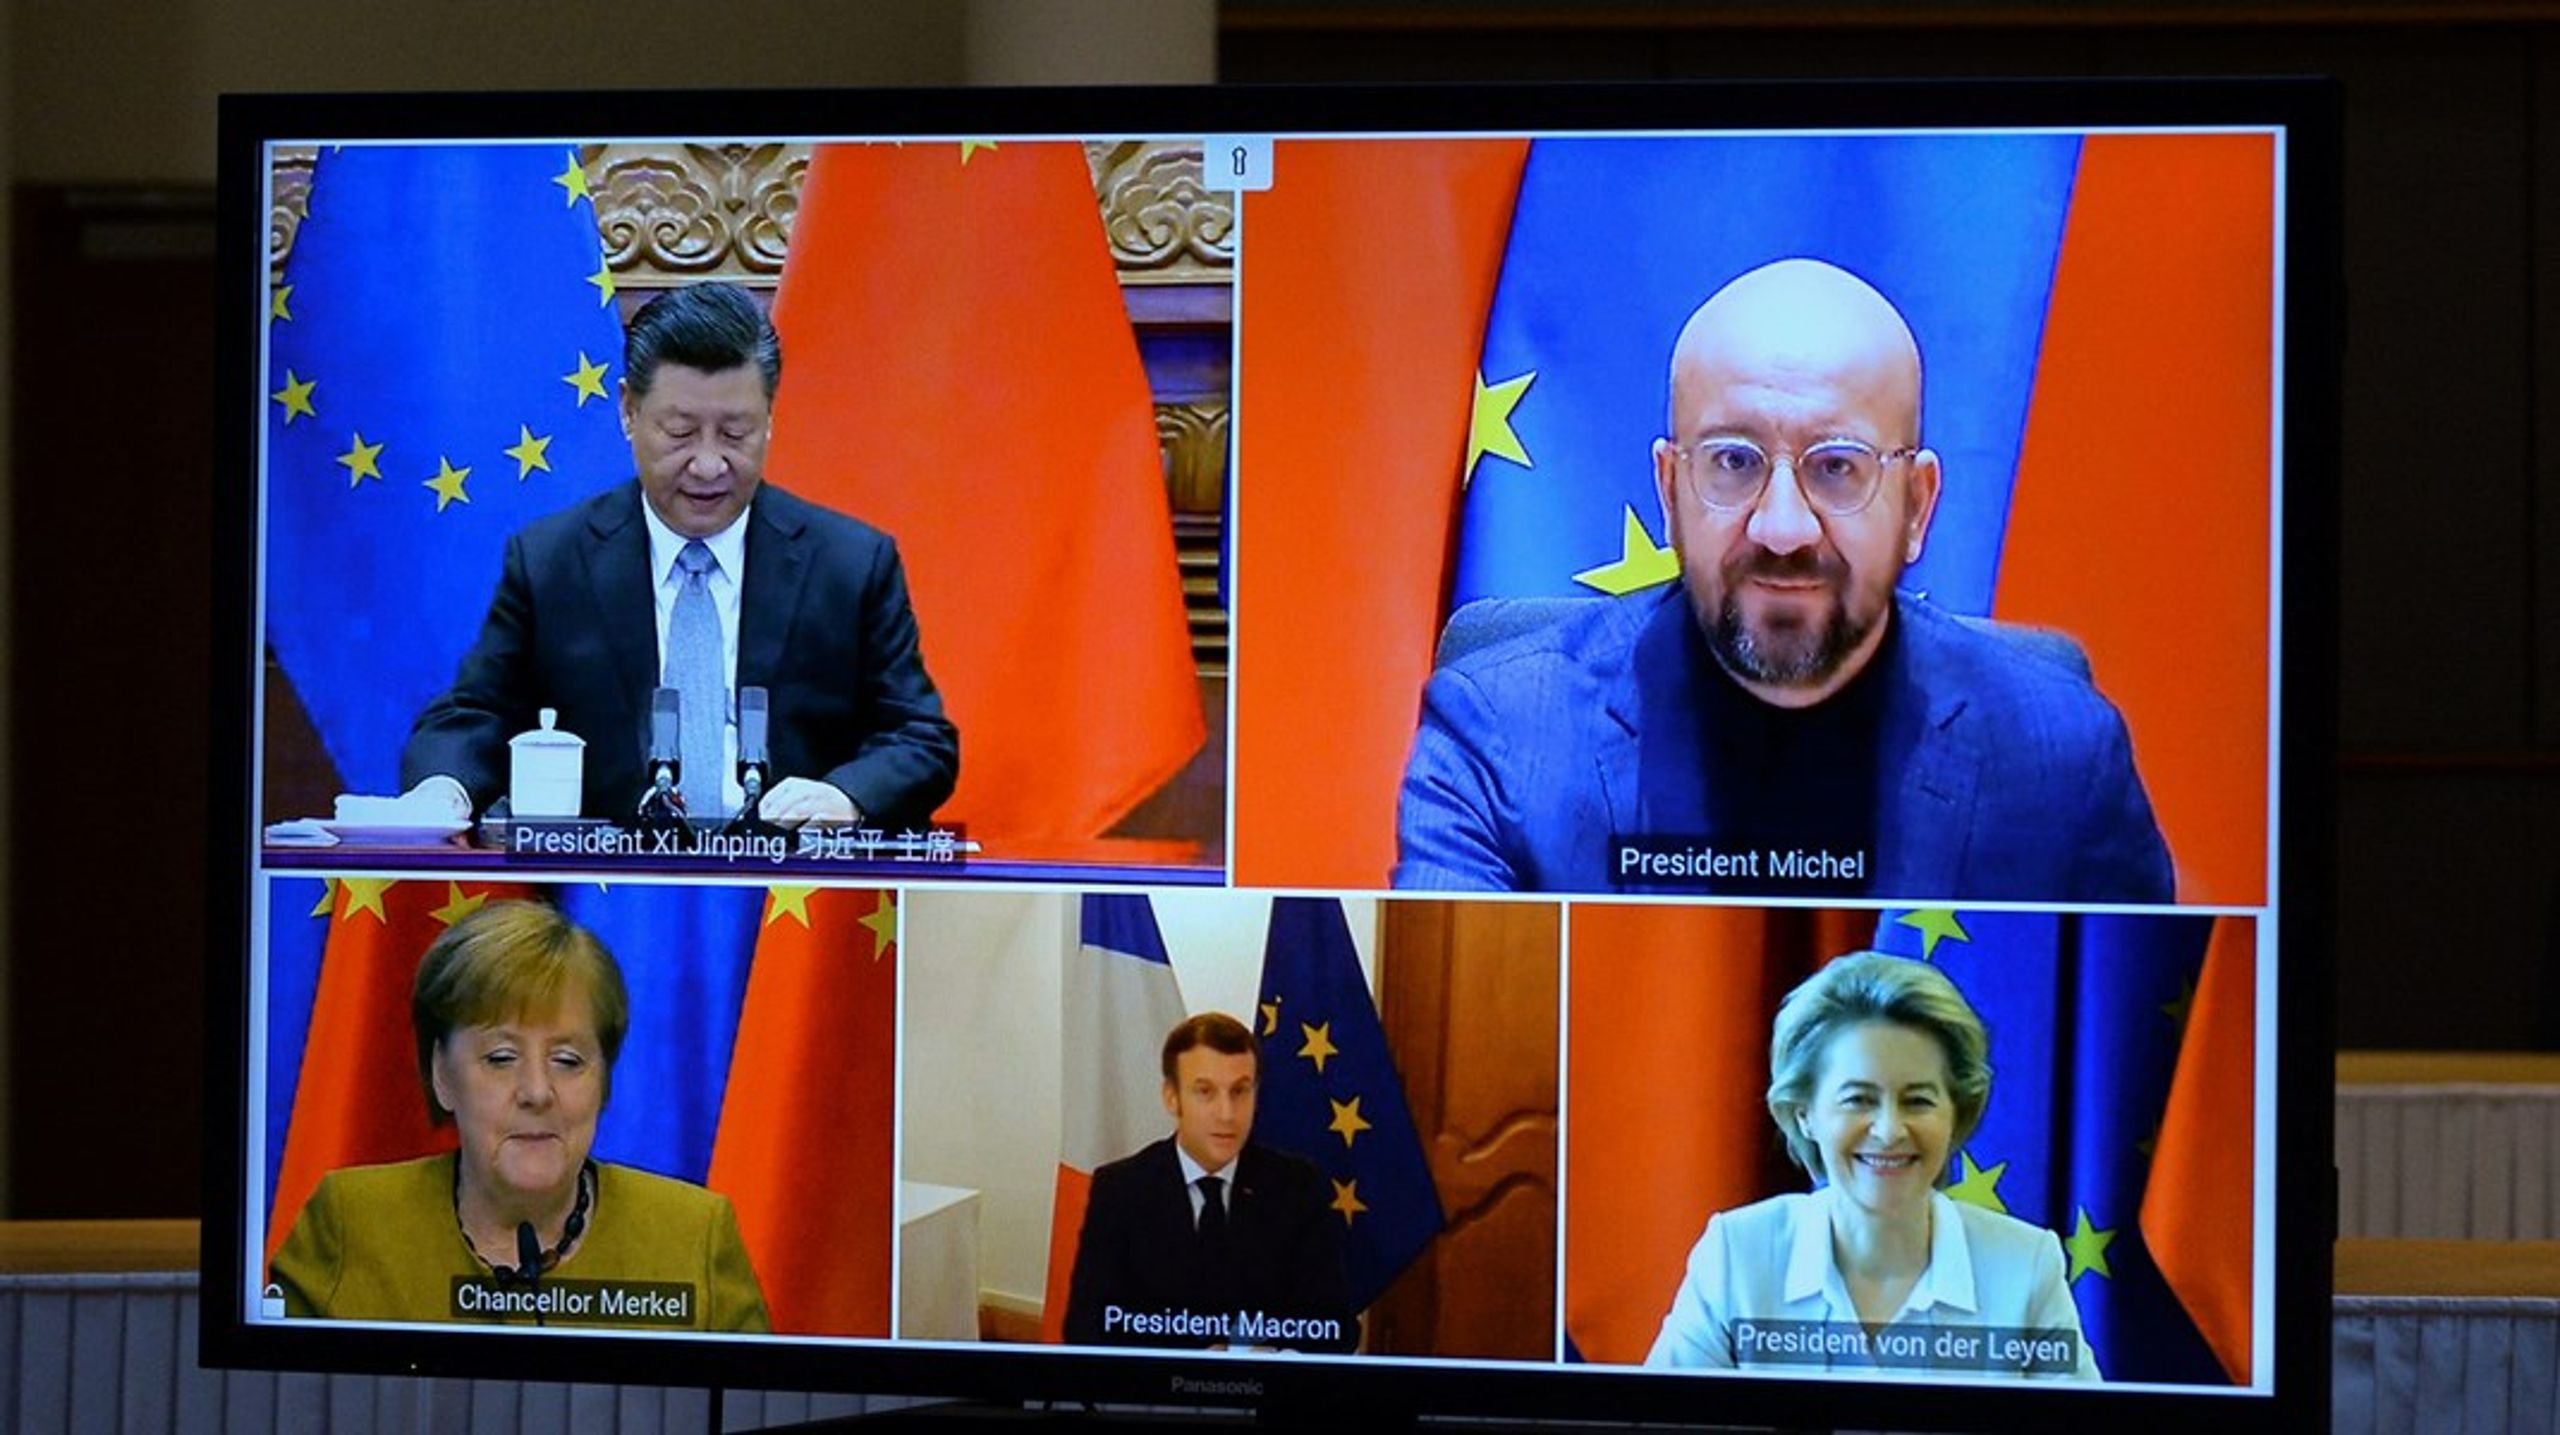 Sidste møde mellem EU's og Kinas ledere fandt sted 30. december 2020. Lederne afsluttede forhandlingerne om en investeringsaftale, som dog siden er sat på pause.&nbsp;Denne gang foregår topmødet også digitalt.